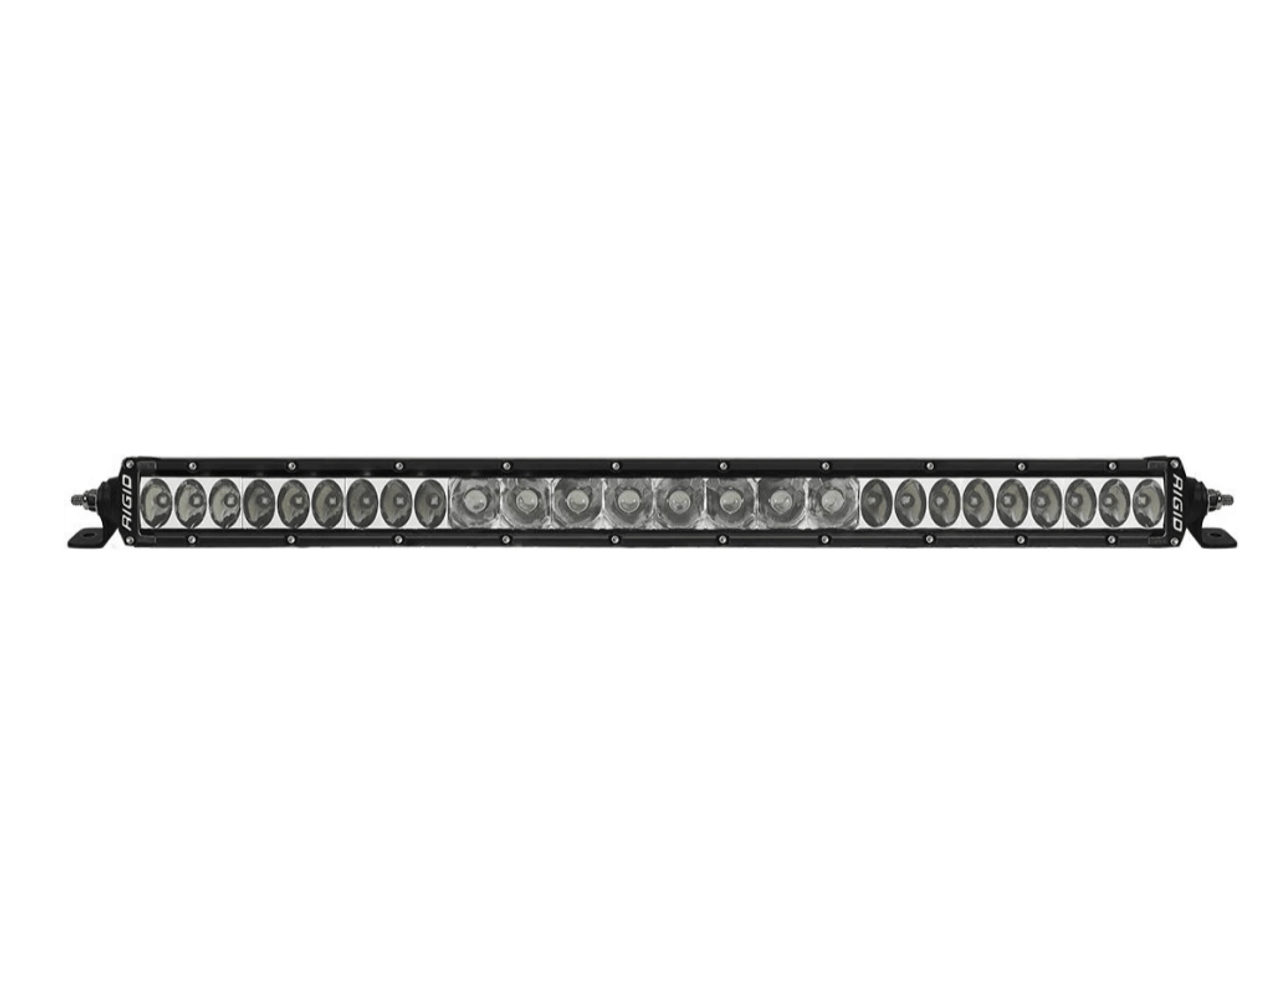  Rigid SR-Series Pro 20” Spot/Drive Combo LED Light Bar - 921314